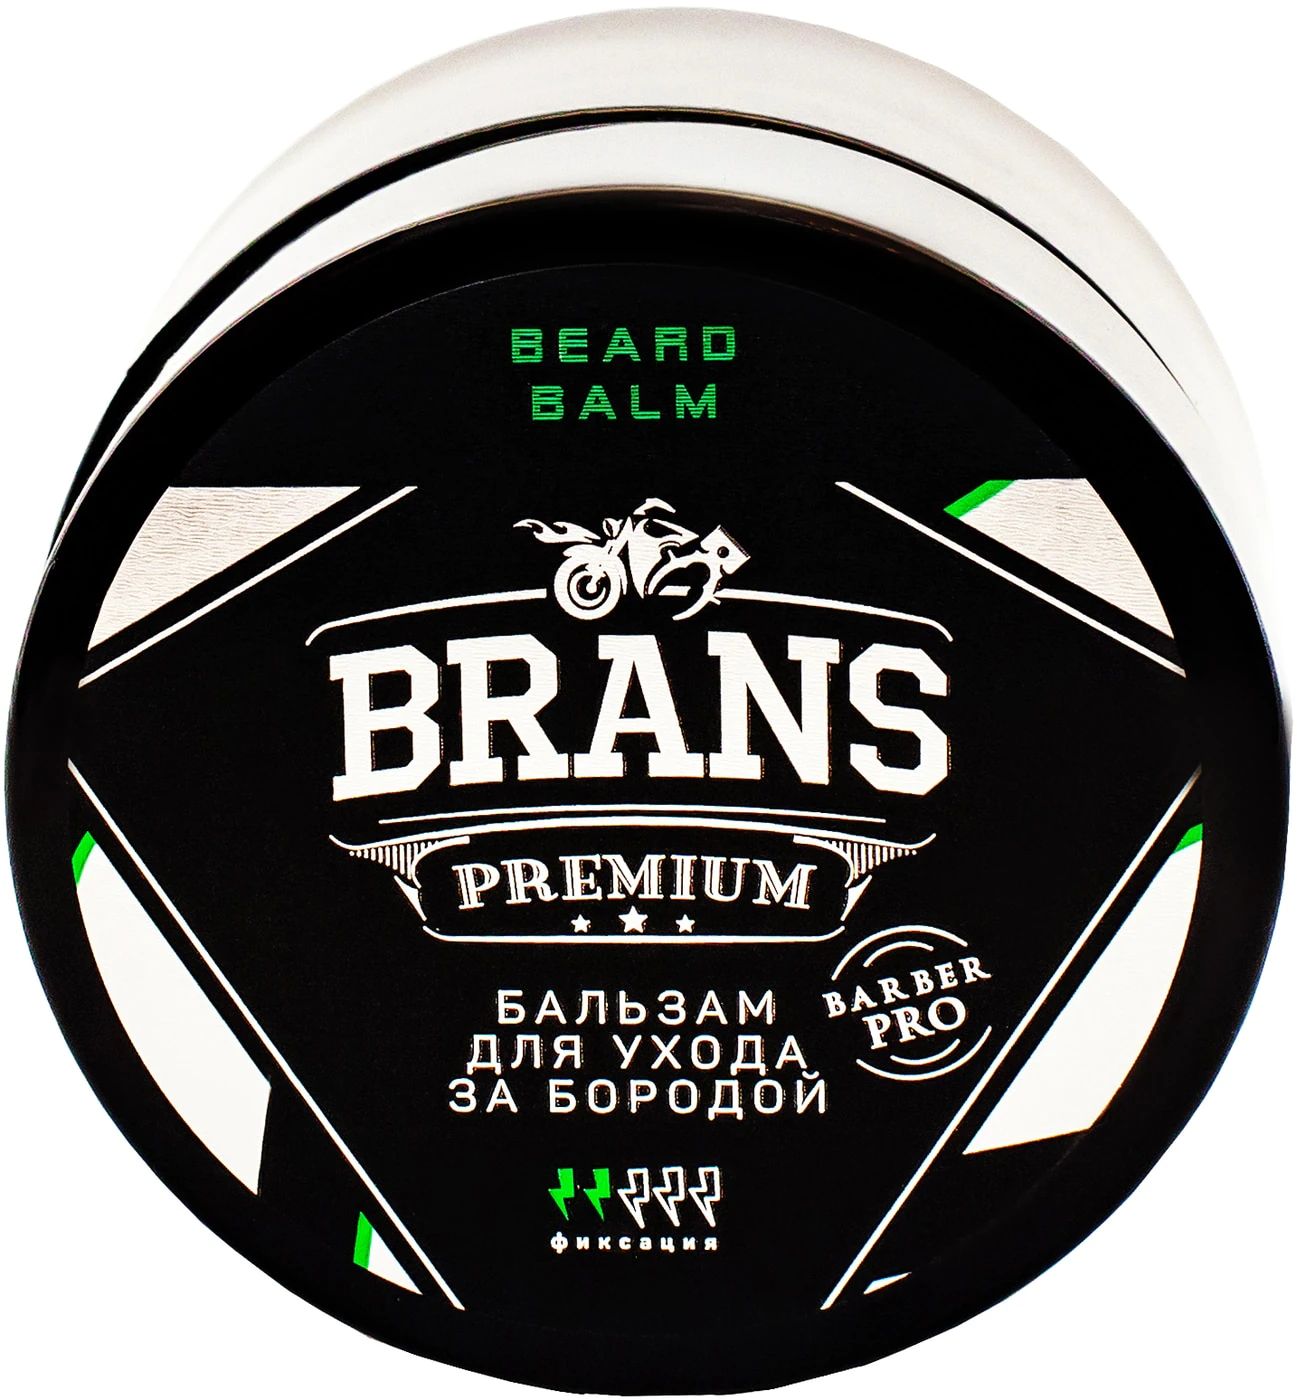 Бальзам Brans Premium для ухода за бородой 50 мл proraso wood and spice набор для ухода за бородой шампунь масло бальзам